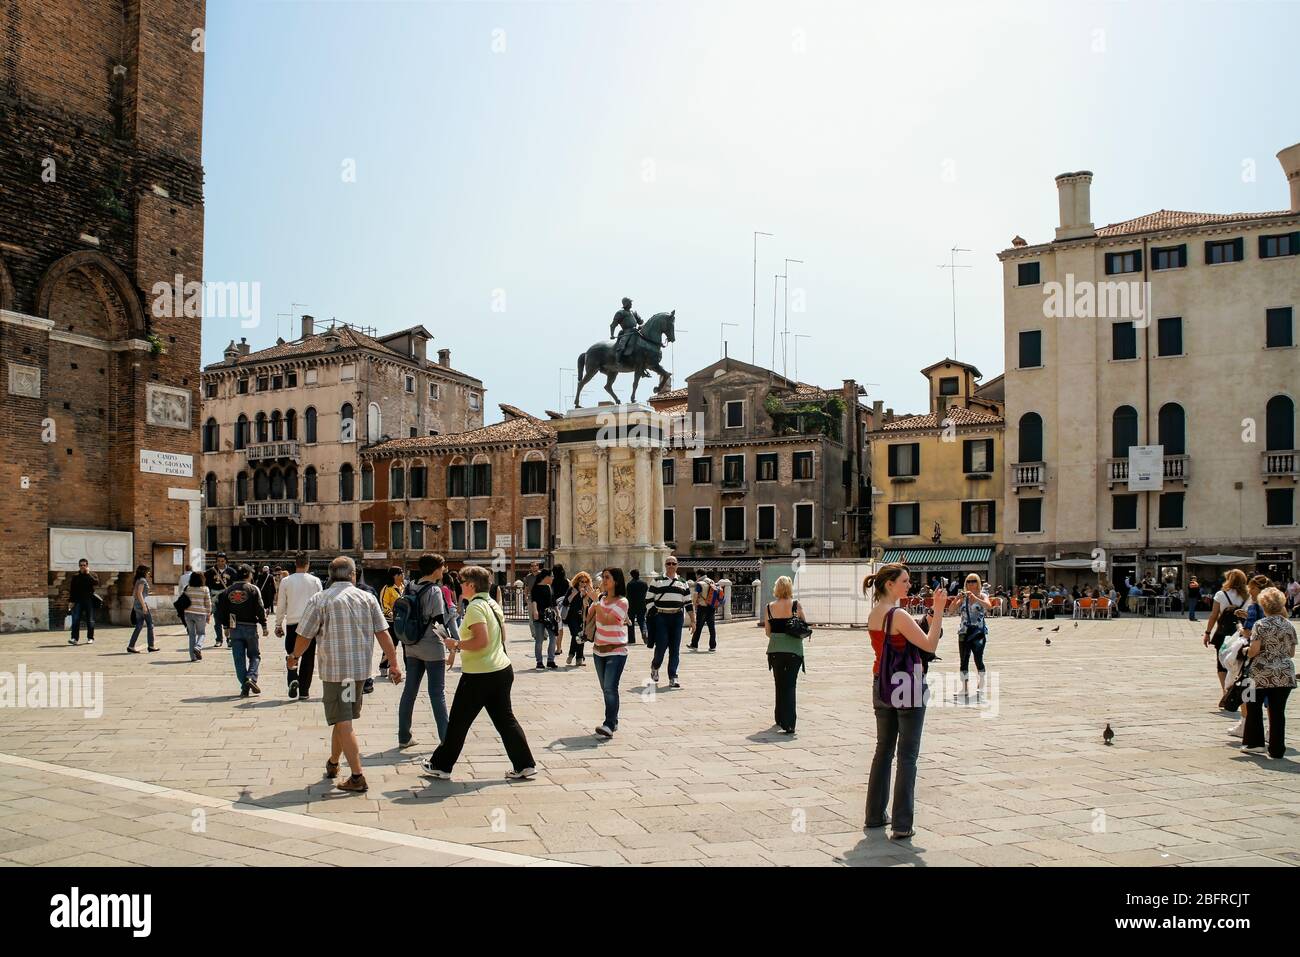 Les gens remplissent la place de la place Santi Giovanni e Paolo entourant une statue de Bartolomeo Colleoni. Venise, Italie. RMN Banque D'Images